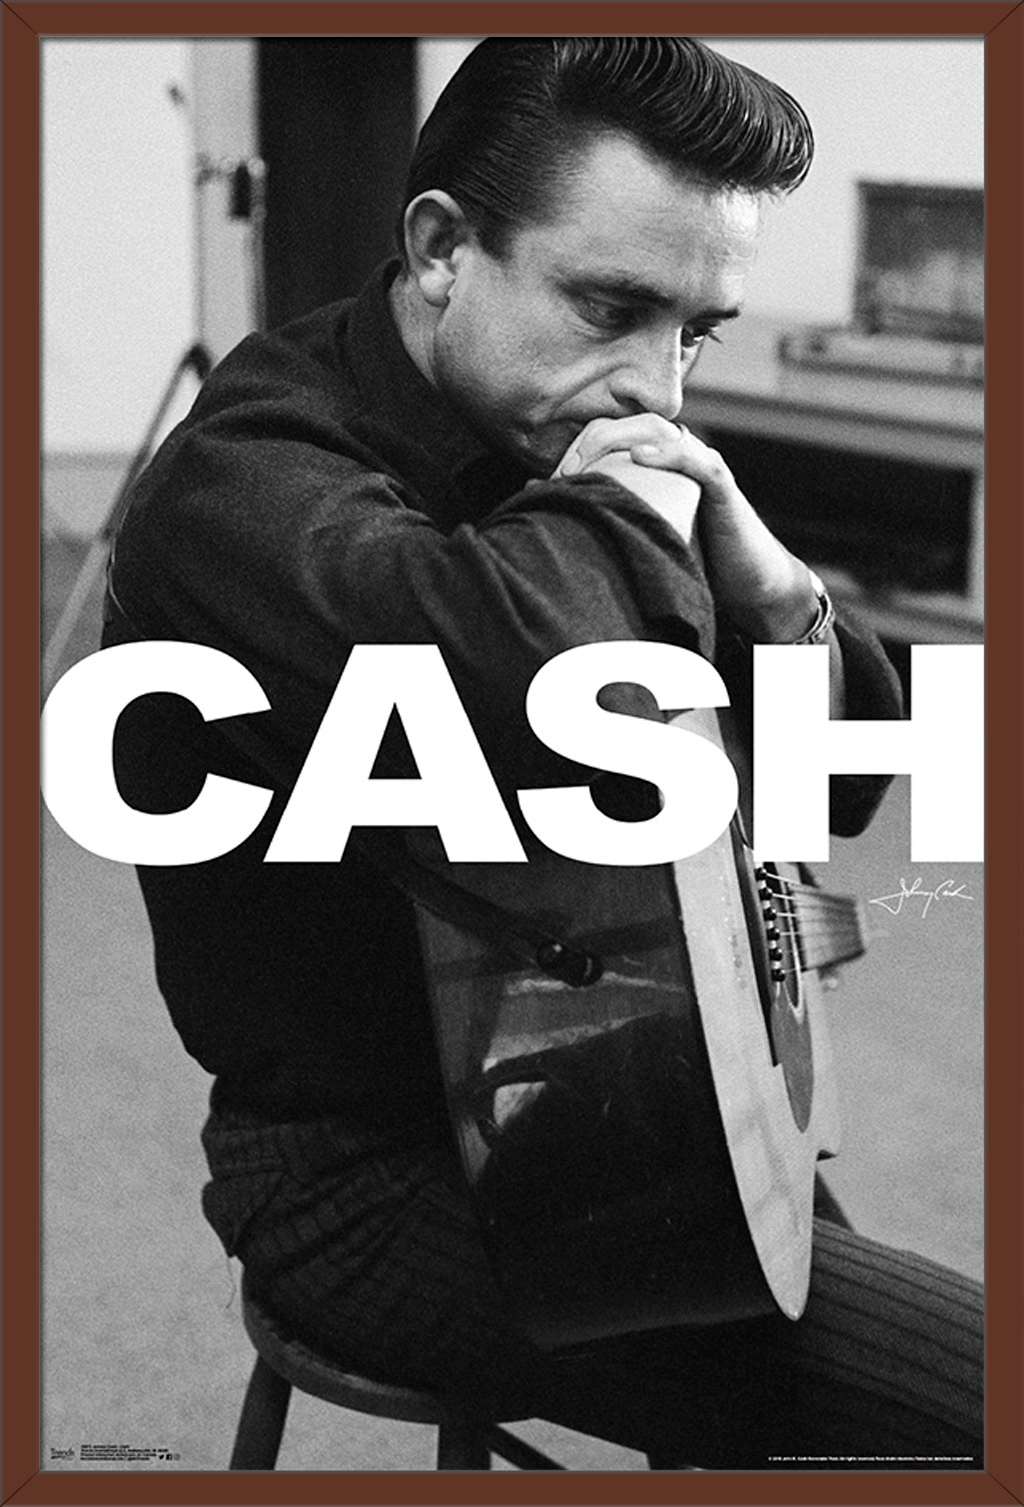 Johnny Cash - Cash Poster - image 1 of 2